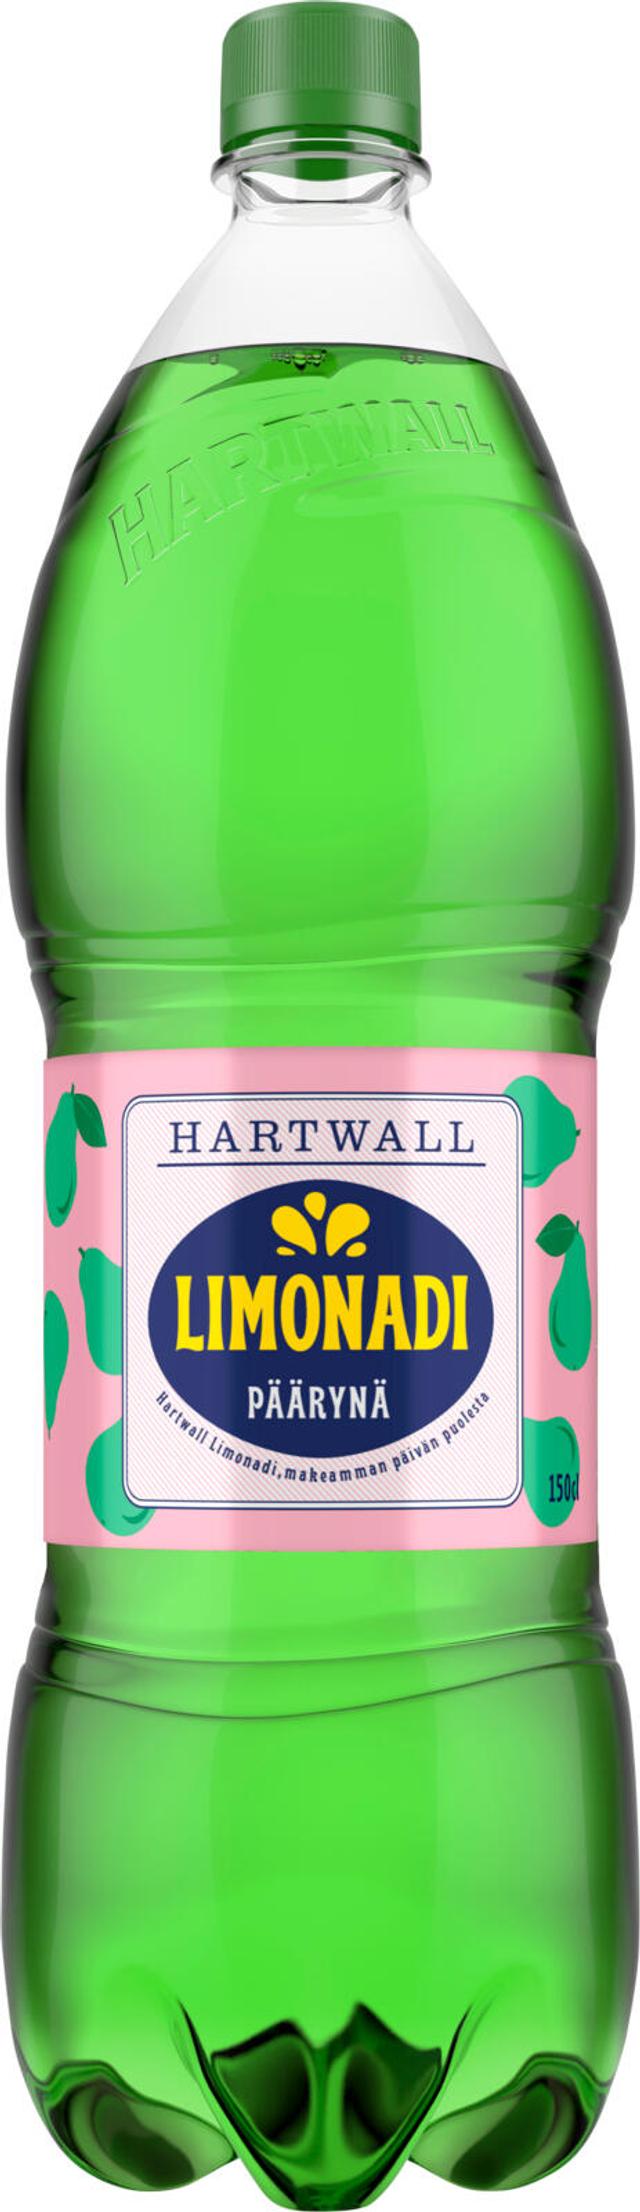 Hartwall Limonadi Päärynä virvoitusjuoma 1,5 l